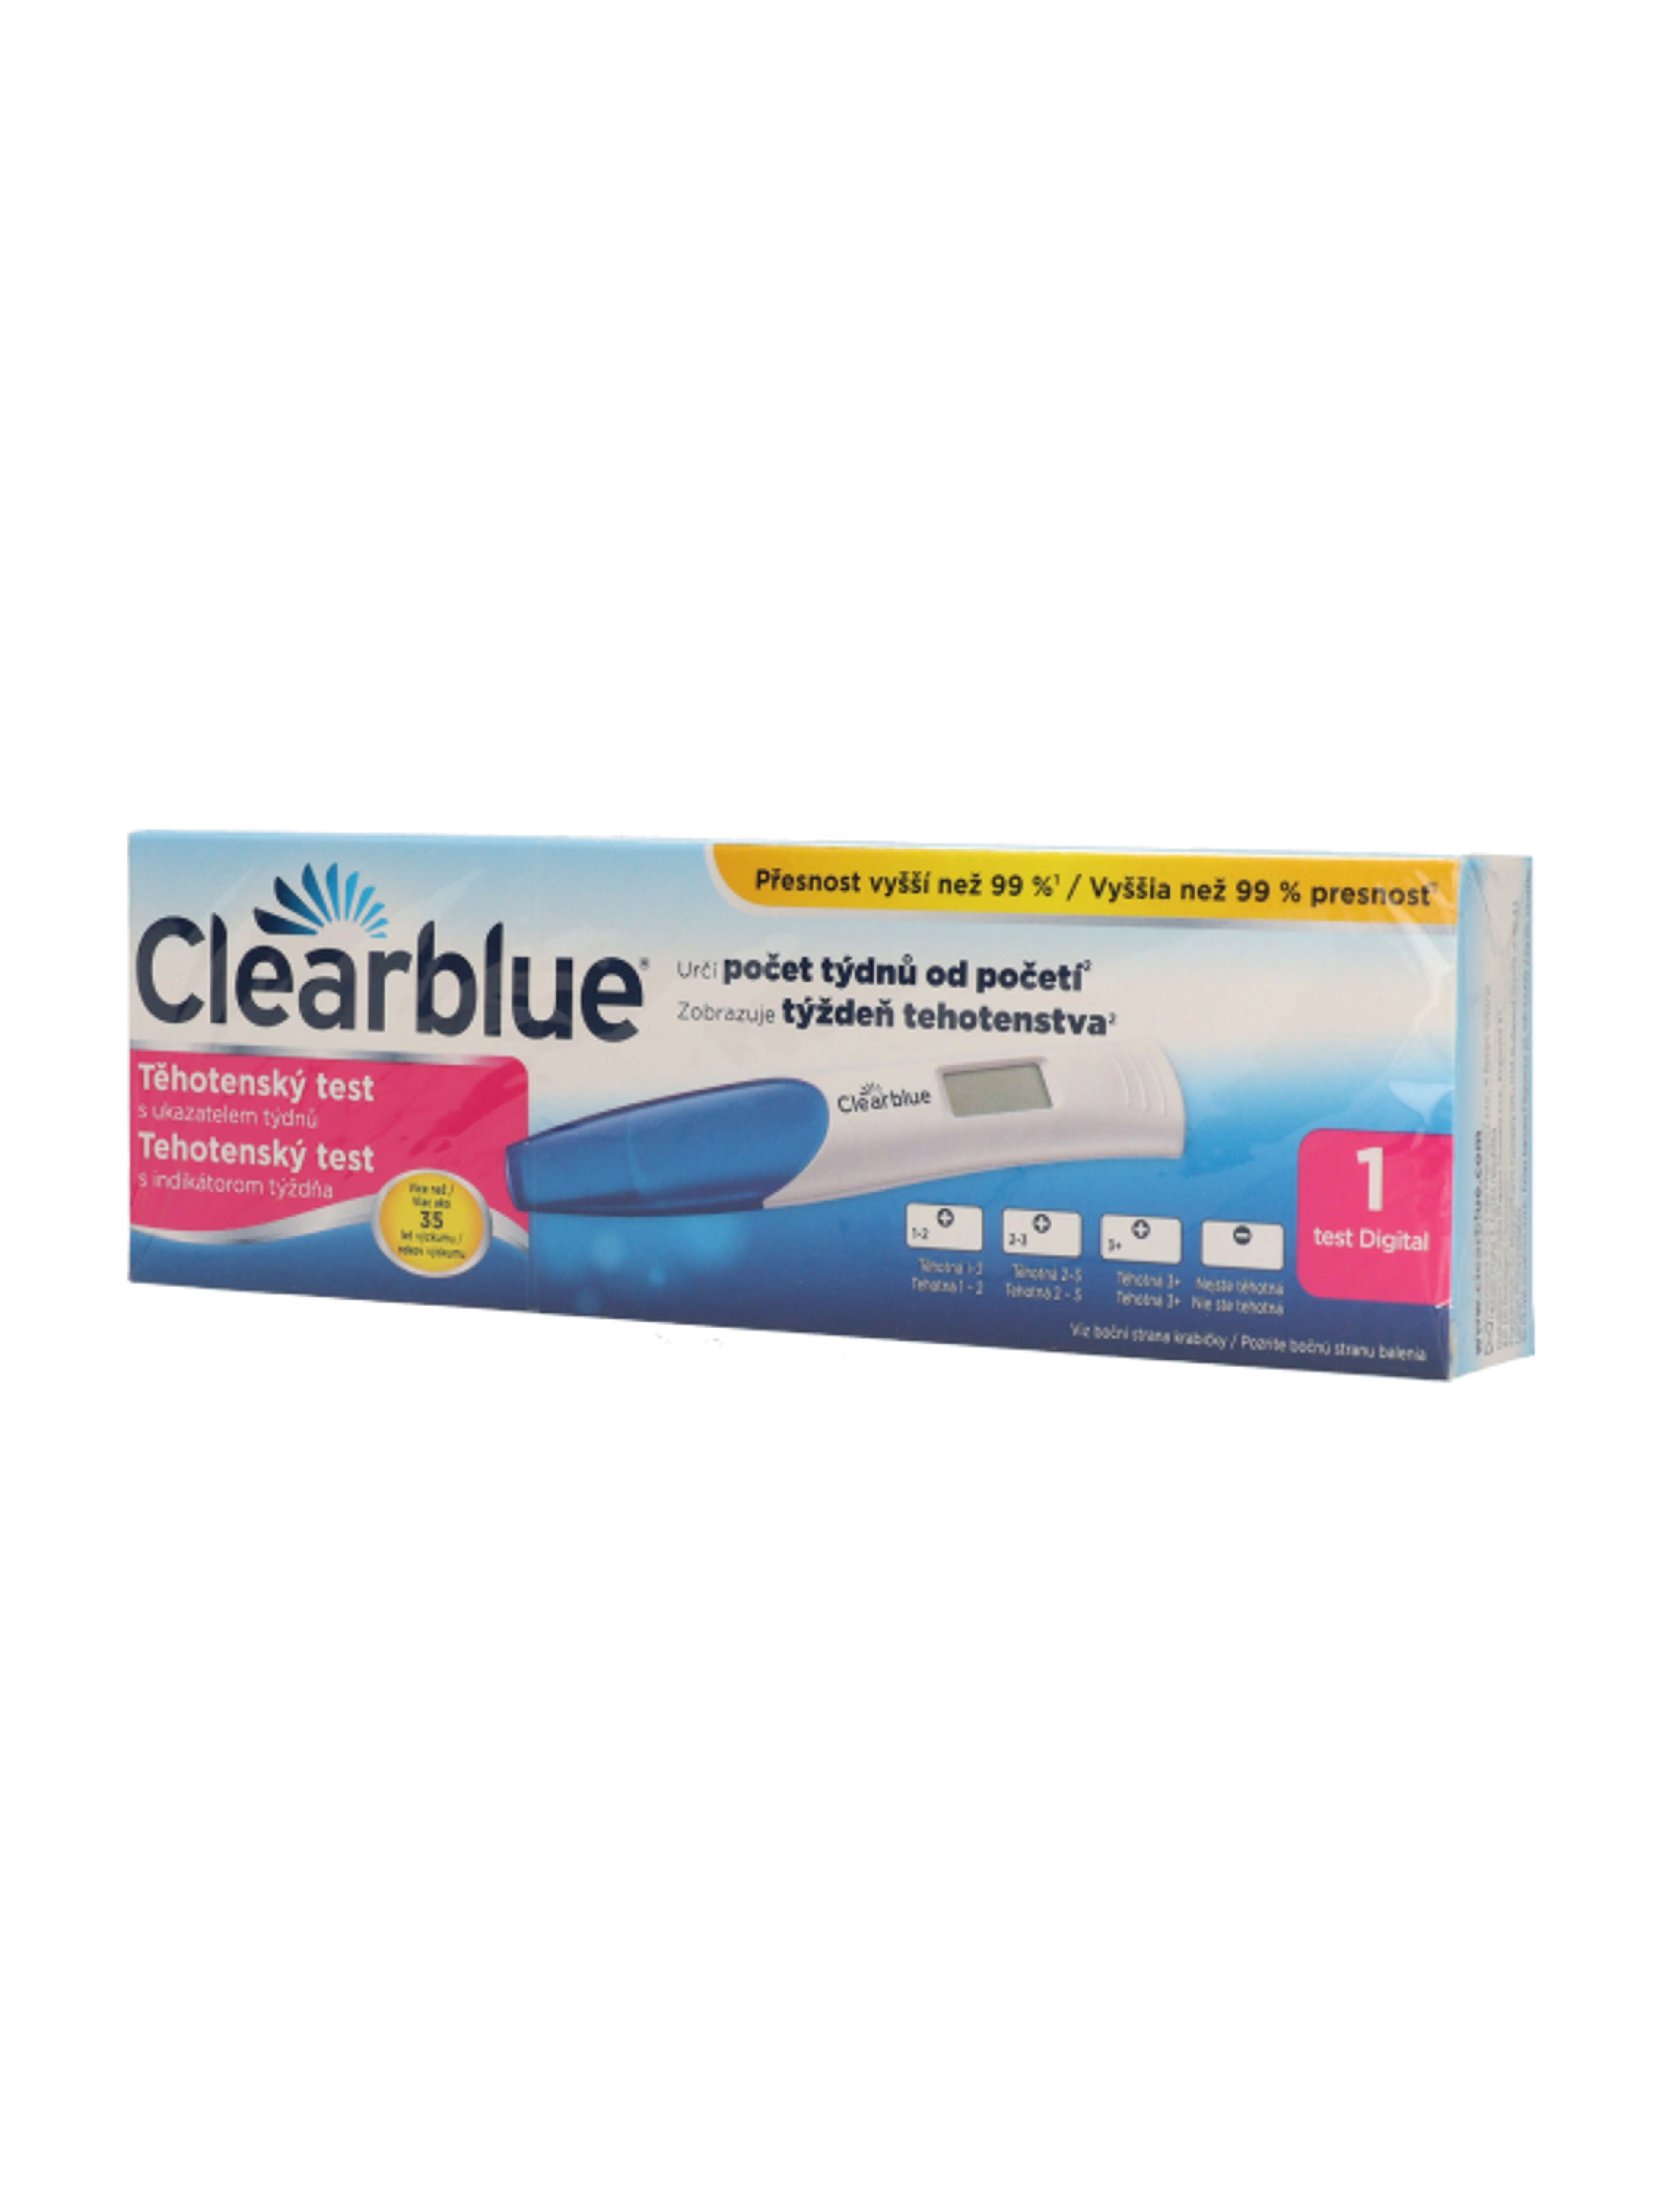 Clearblue Digitális terhességi teszt fogamzásjelzovel - 1 db-3